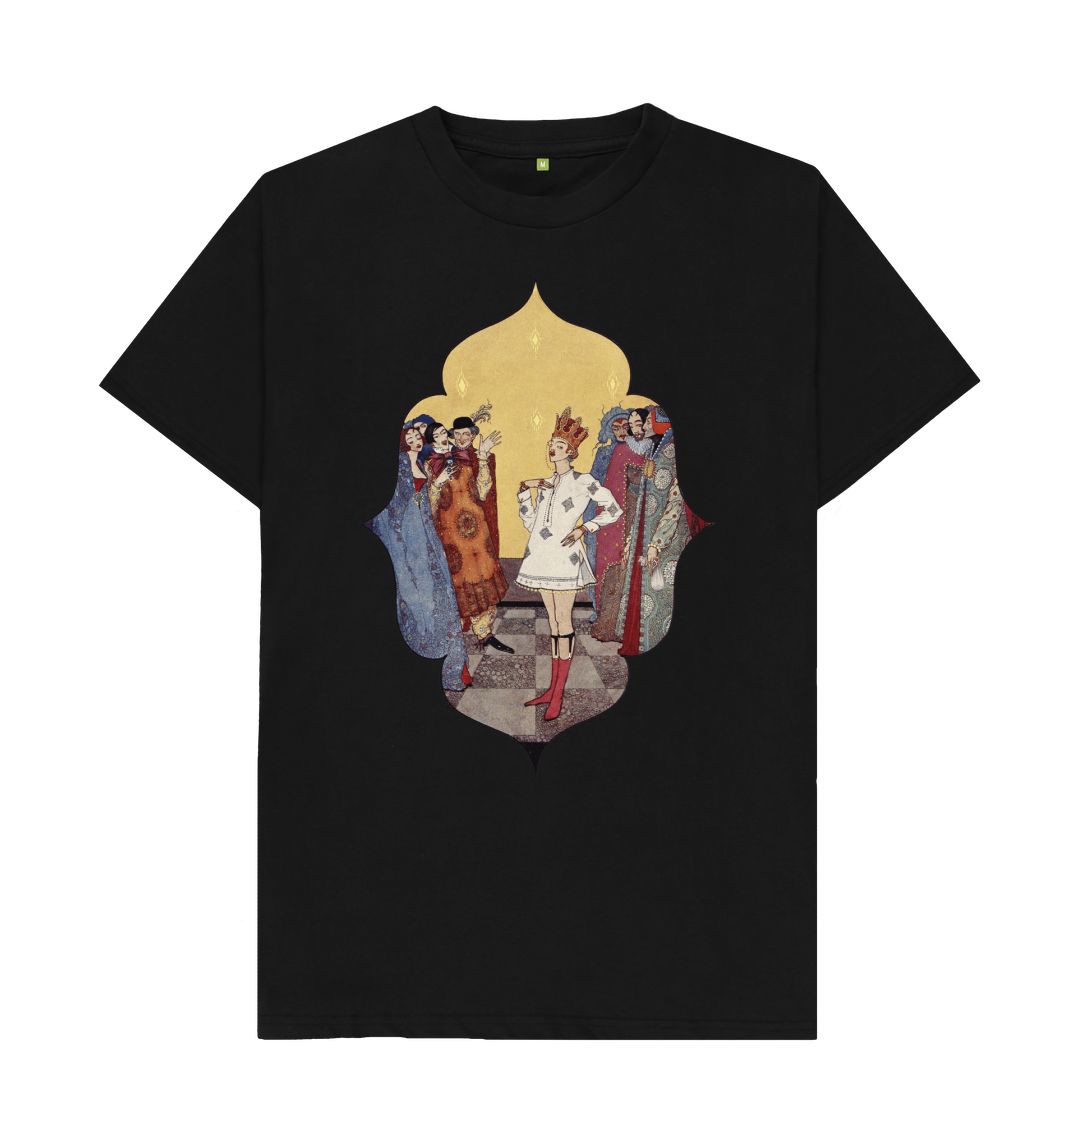 Black The Emperor's New Clothes T-Shirt